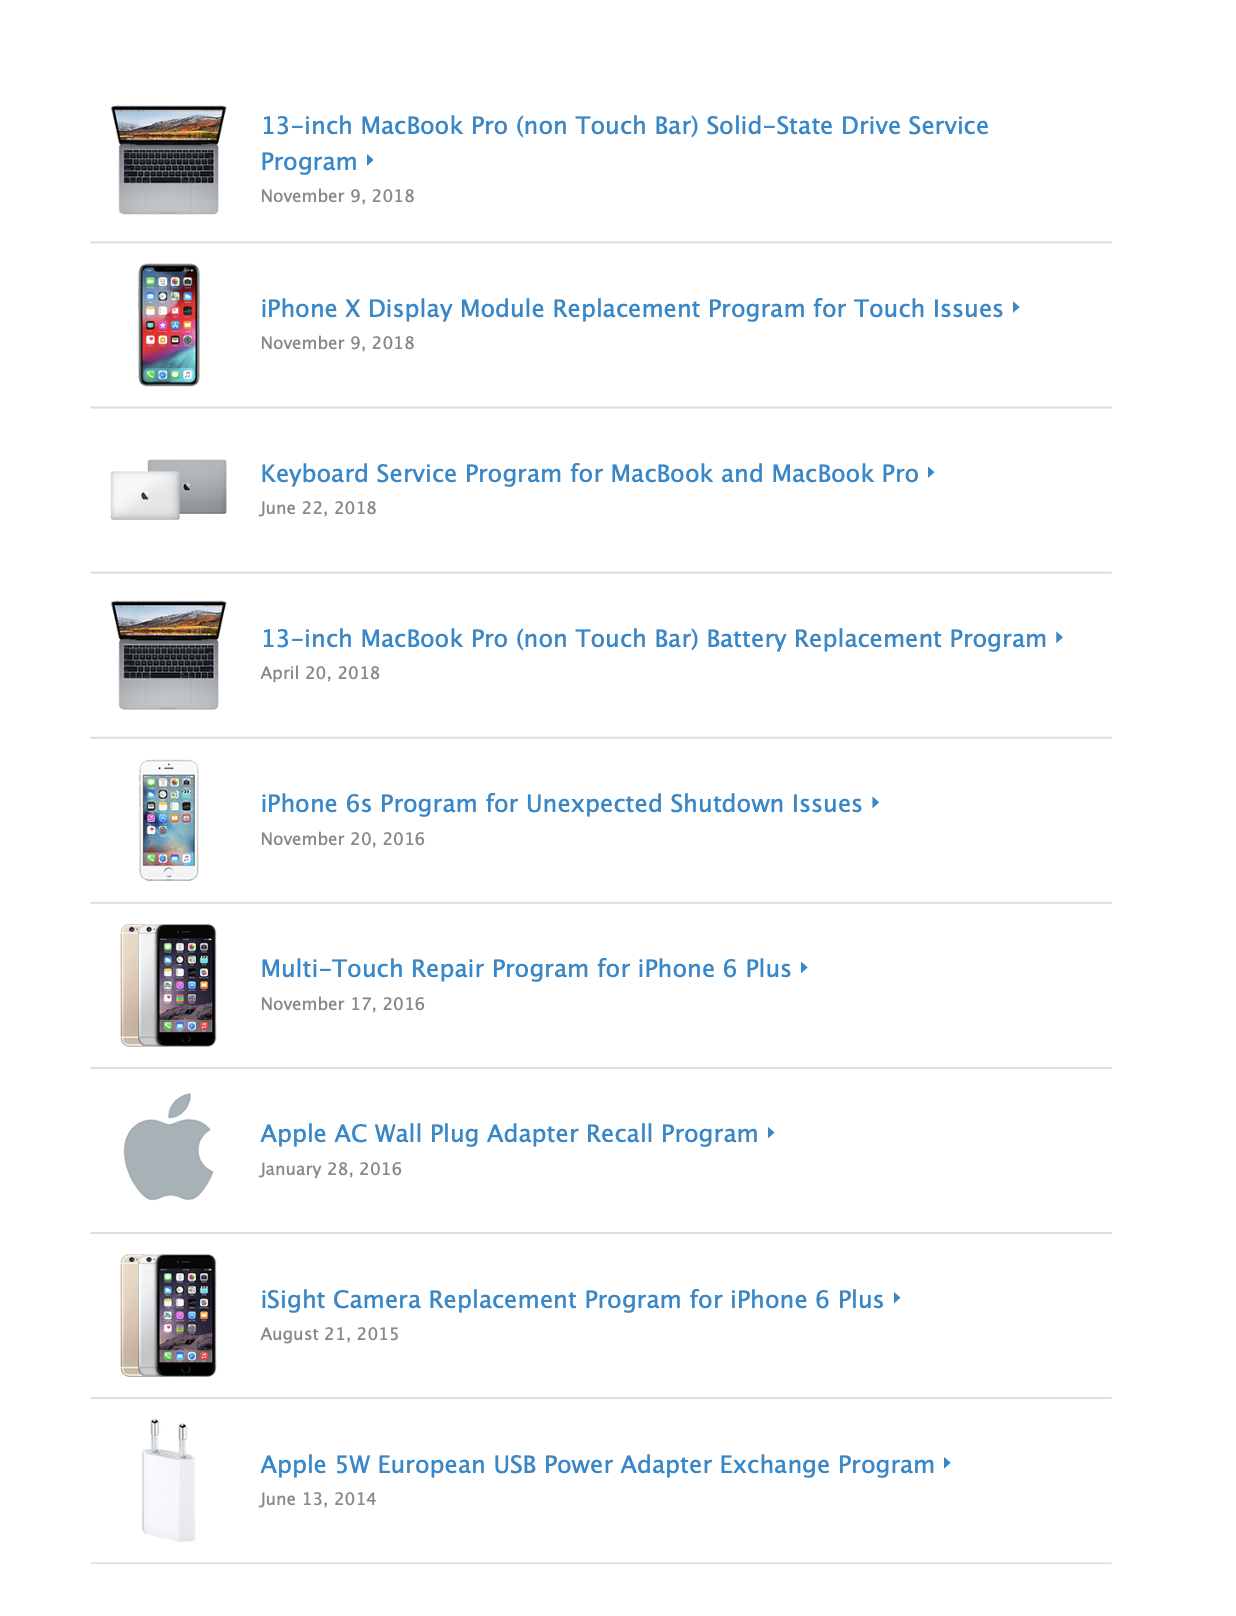 Nhắc lại: Apple sẽ sửa chữa miễn phí màn hình iPhone X nếu bị lỗi cảm ứng